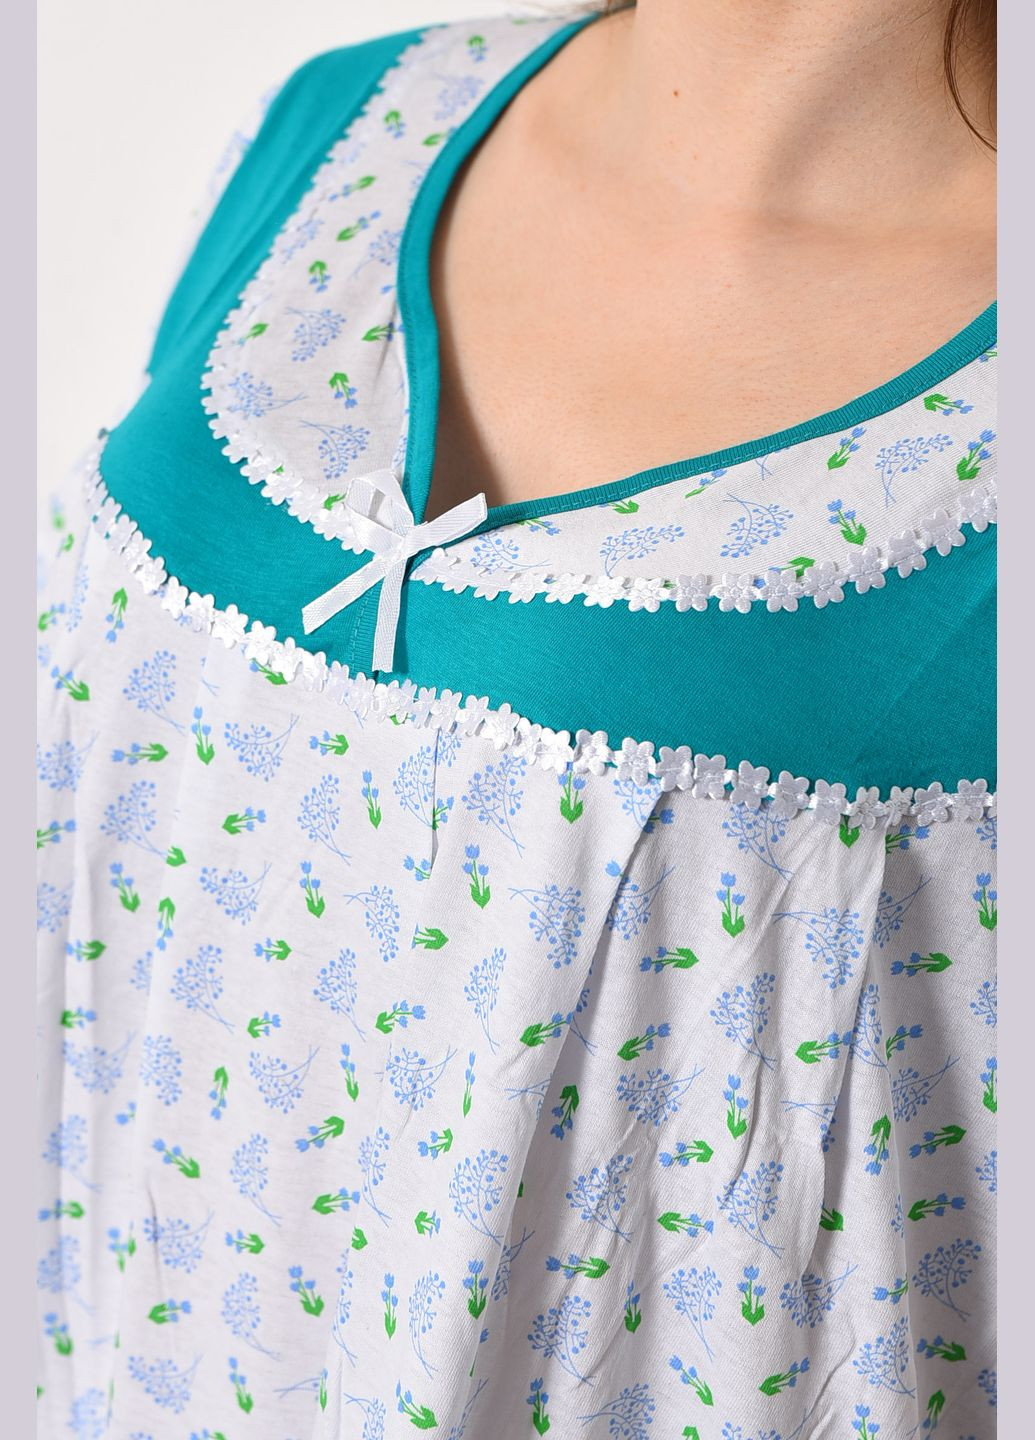 Ночная рубашка женская батальная белого цвета с цветочным принтом Let's Shop (289843234)